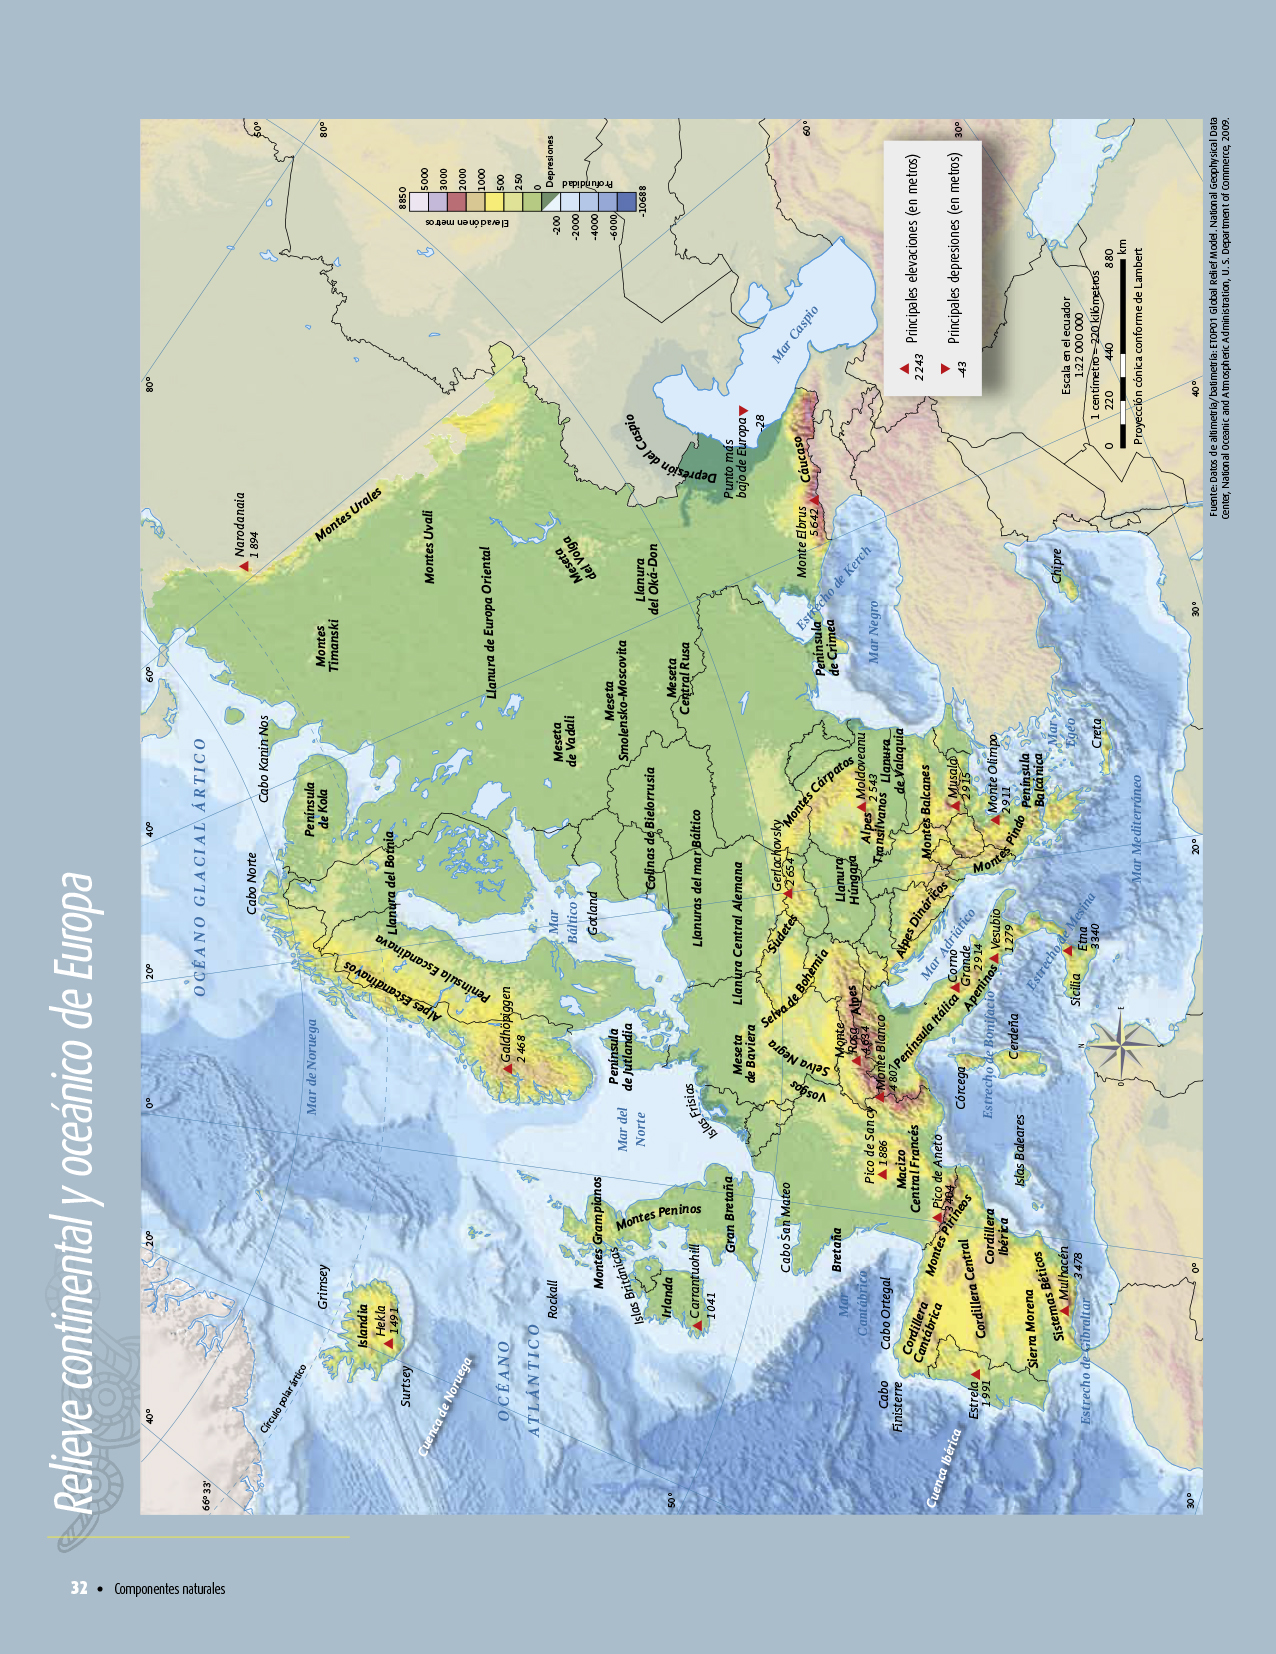 Libro De Atlas 6 Grado - Atlas de geografía del mundo quinto grado 2017-2018 ...